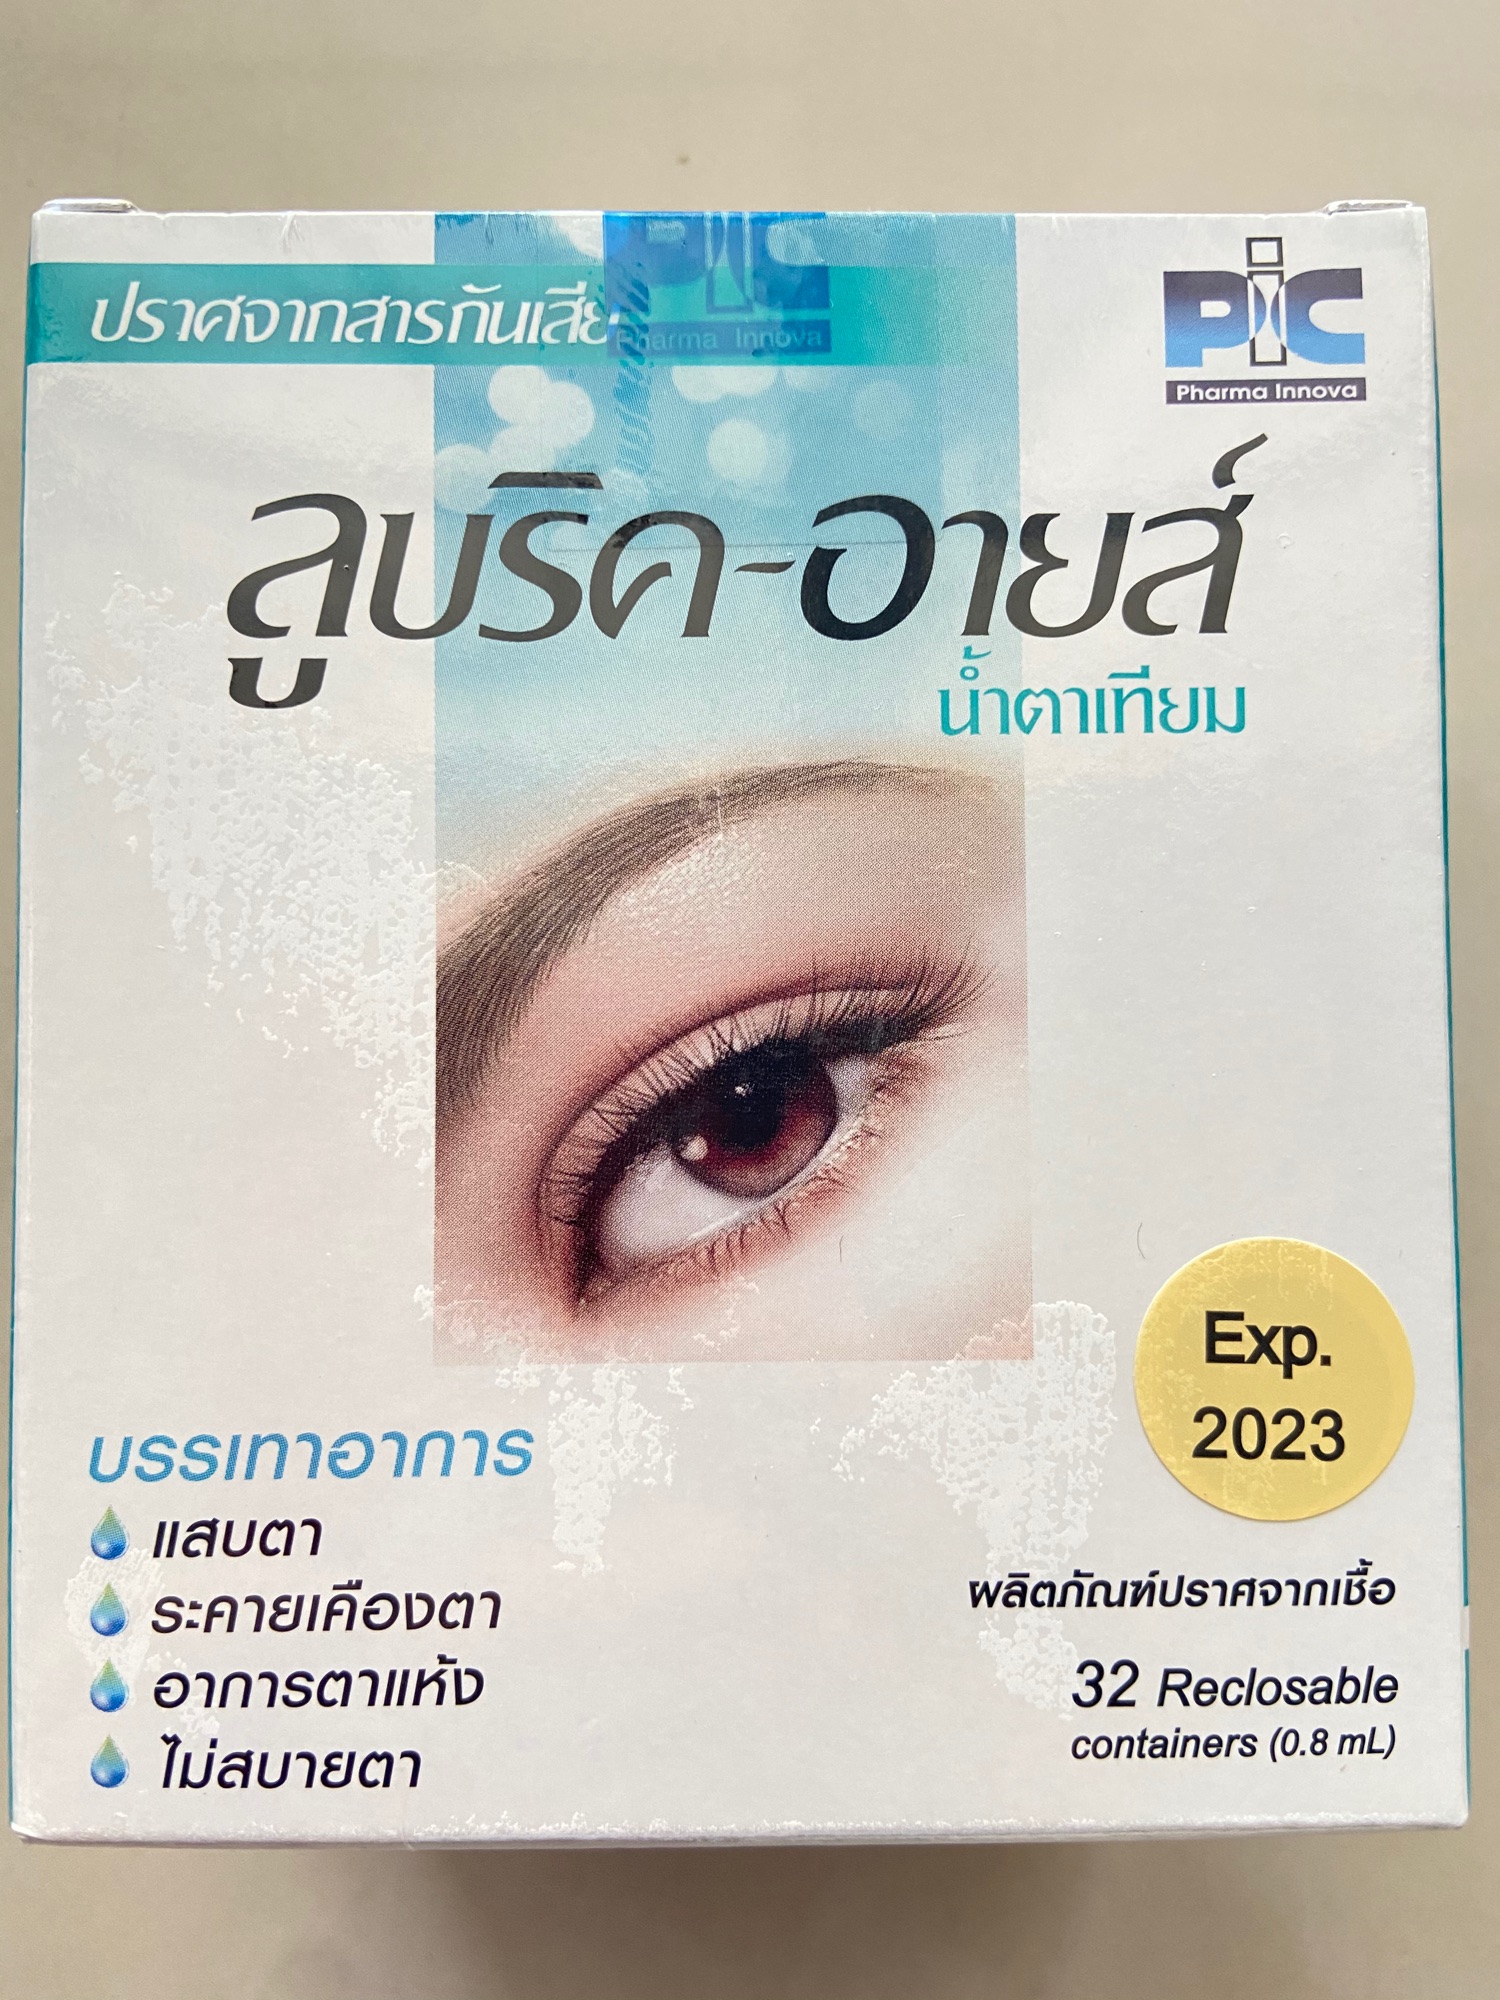 ลูบริค-อายส์ Lubric-Eyes ล็อตใหม่ น้ำตา เทียม ไม่มีสารกันเสีย 32 หลอด 0.8 ml Exp 08.2023 ลดอาการตาแห้ง ระคายเคืองตา ของแท้ 100% พร้อมส่ง